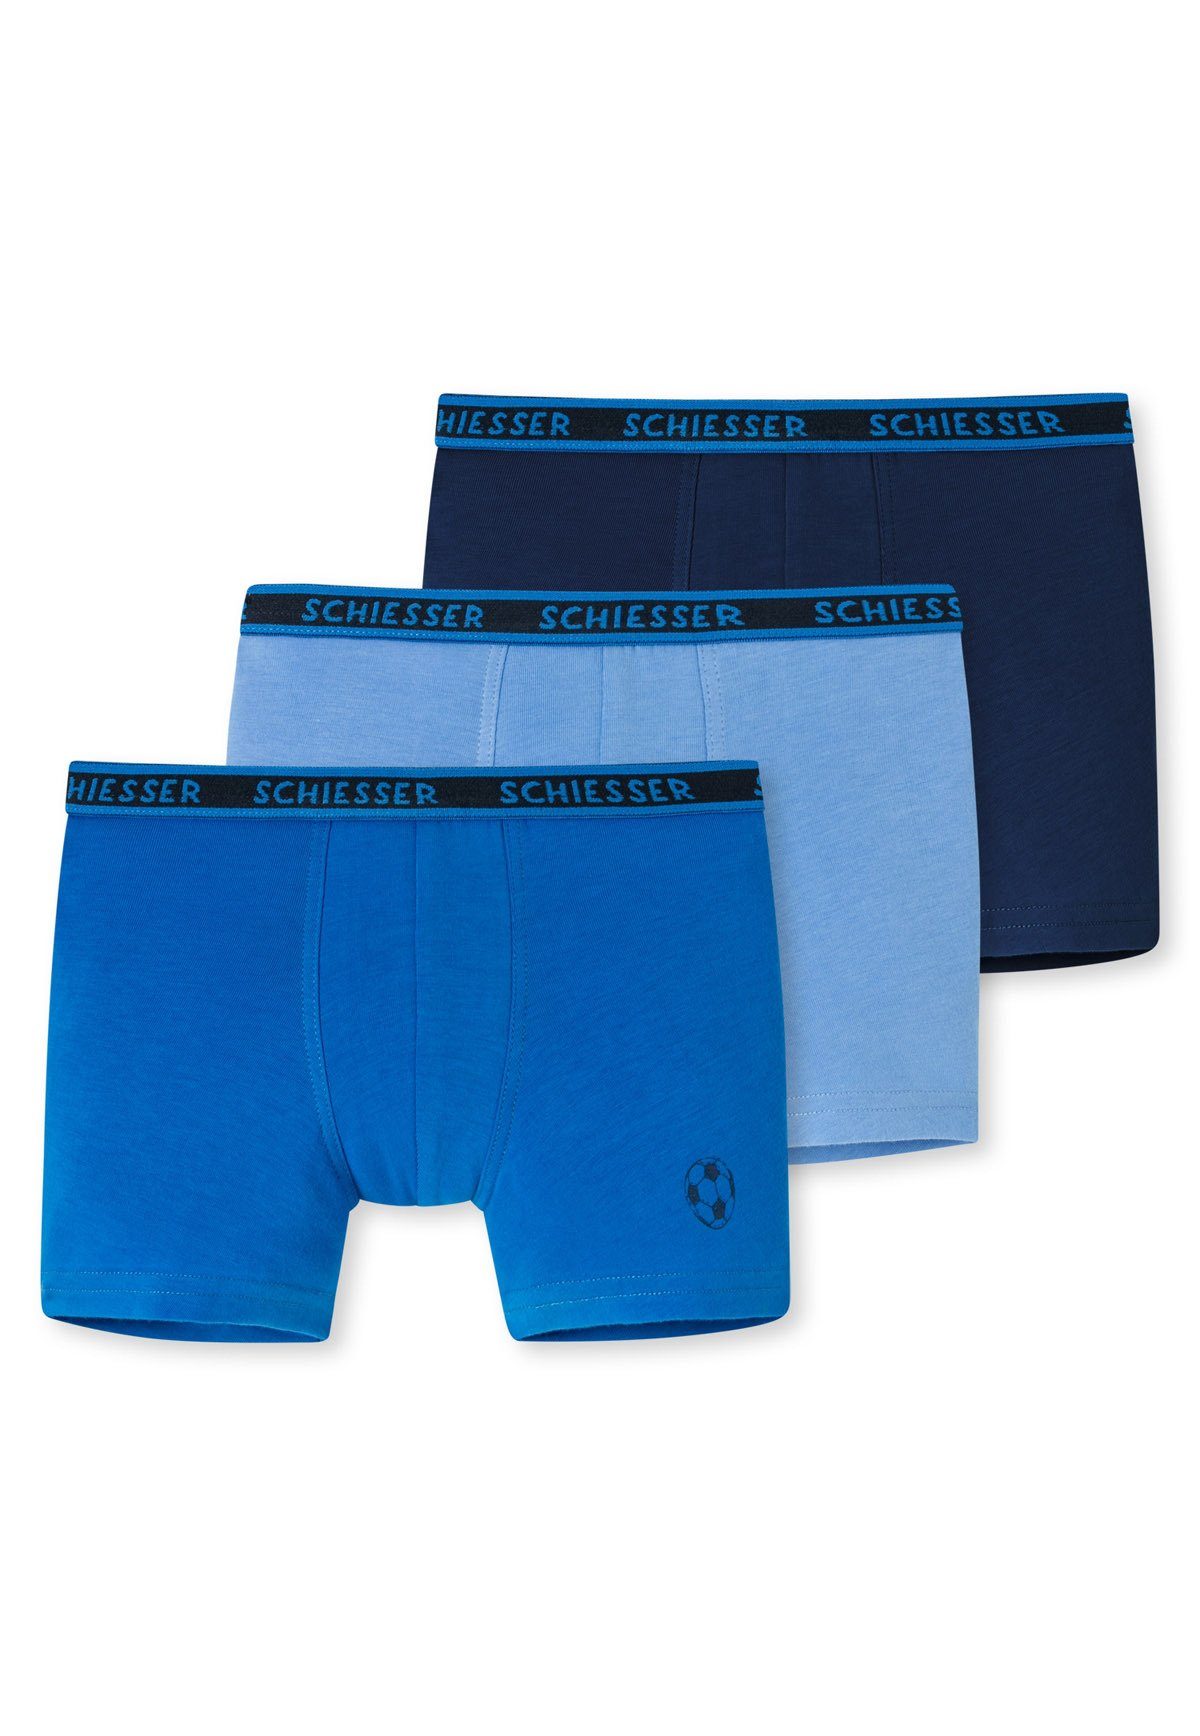 Schiesser Boxer Jungen Shorts 3er Pack - Unterhose, Hip Shorts Hellblau/Blau/Dunkelblau (2)